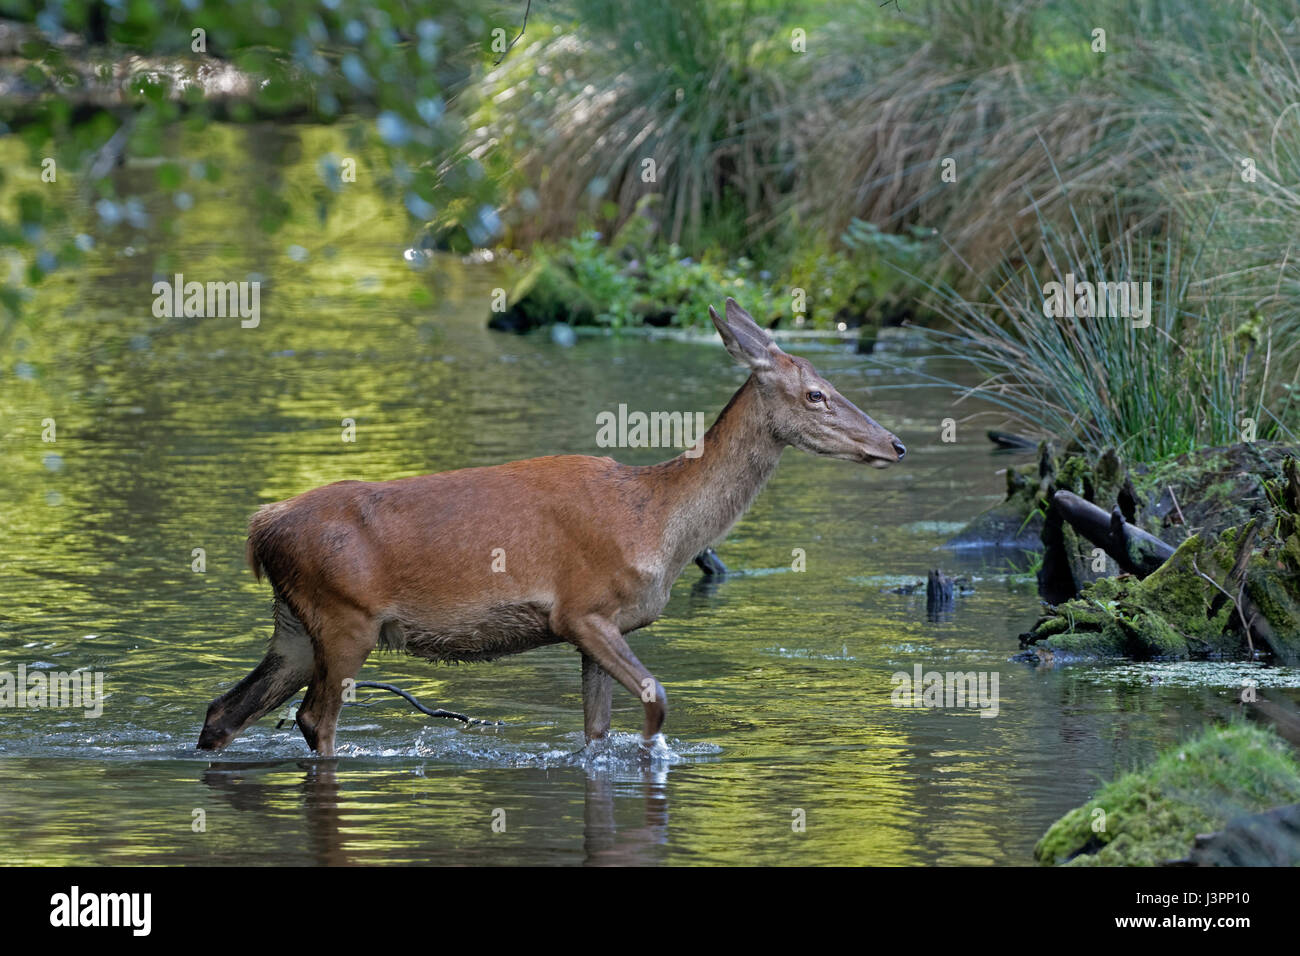 Red deer (Cervus elaphus) walking through water, Schleswig- Holstein, Germany, Europe Stock Photo